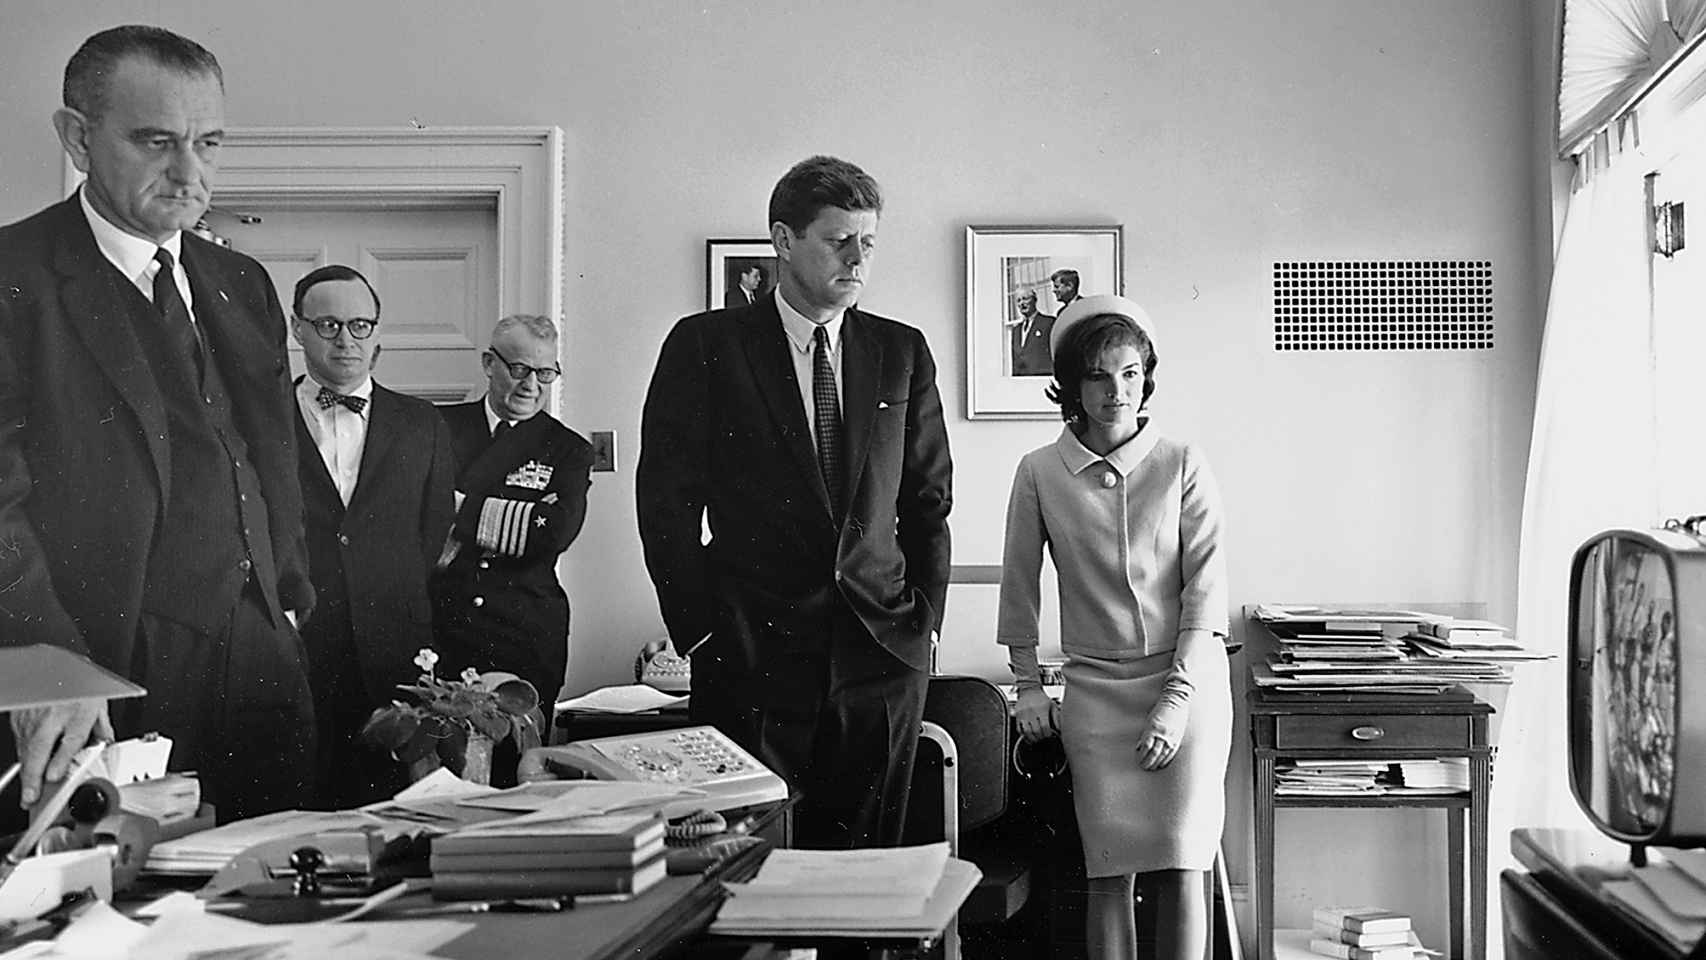 El matrimonio Kennedy y Lyndon B. Johnson viendo el vuelo de Shepard en 1961.